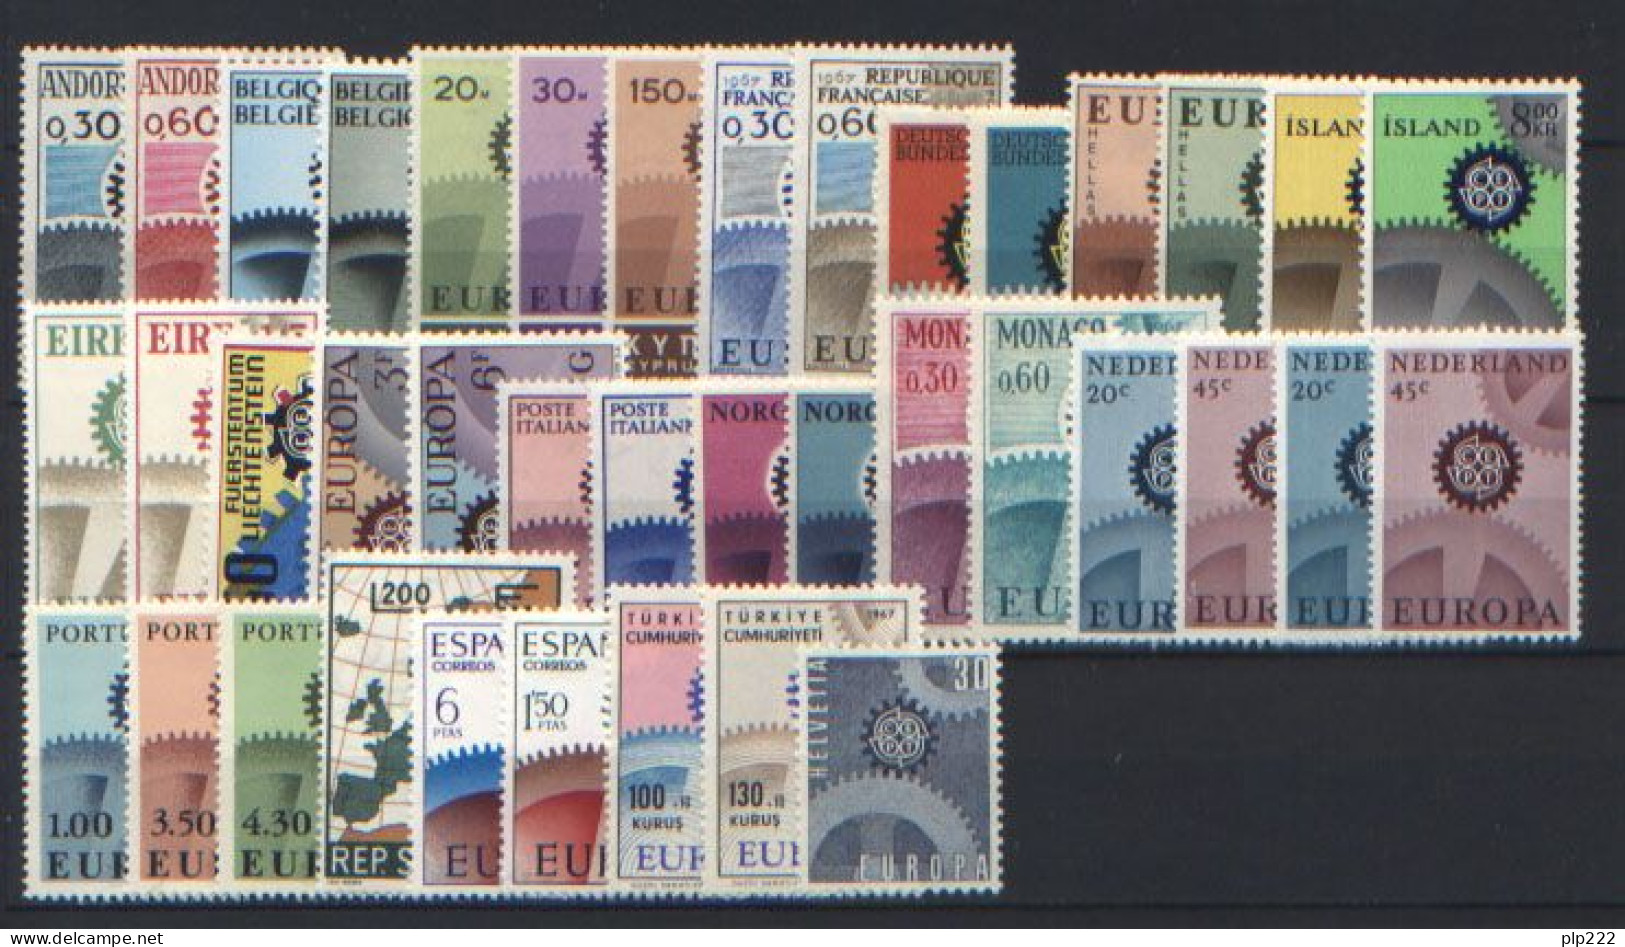 Europa CEPT 1967 Annata Completa + Foglietto / Complete Year Set + S/S **/MNH VF - Full Years